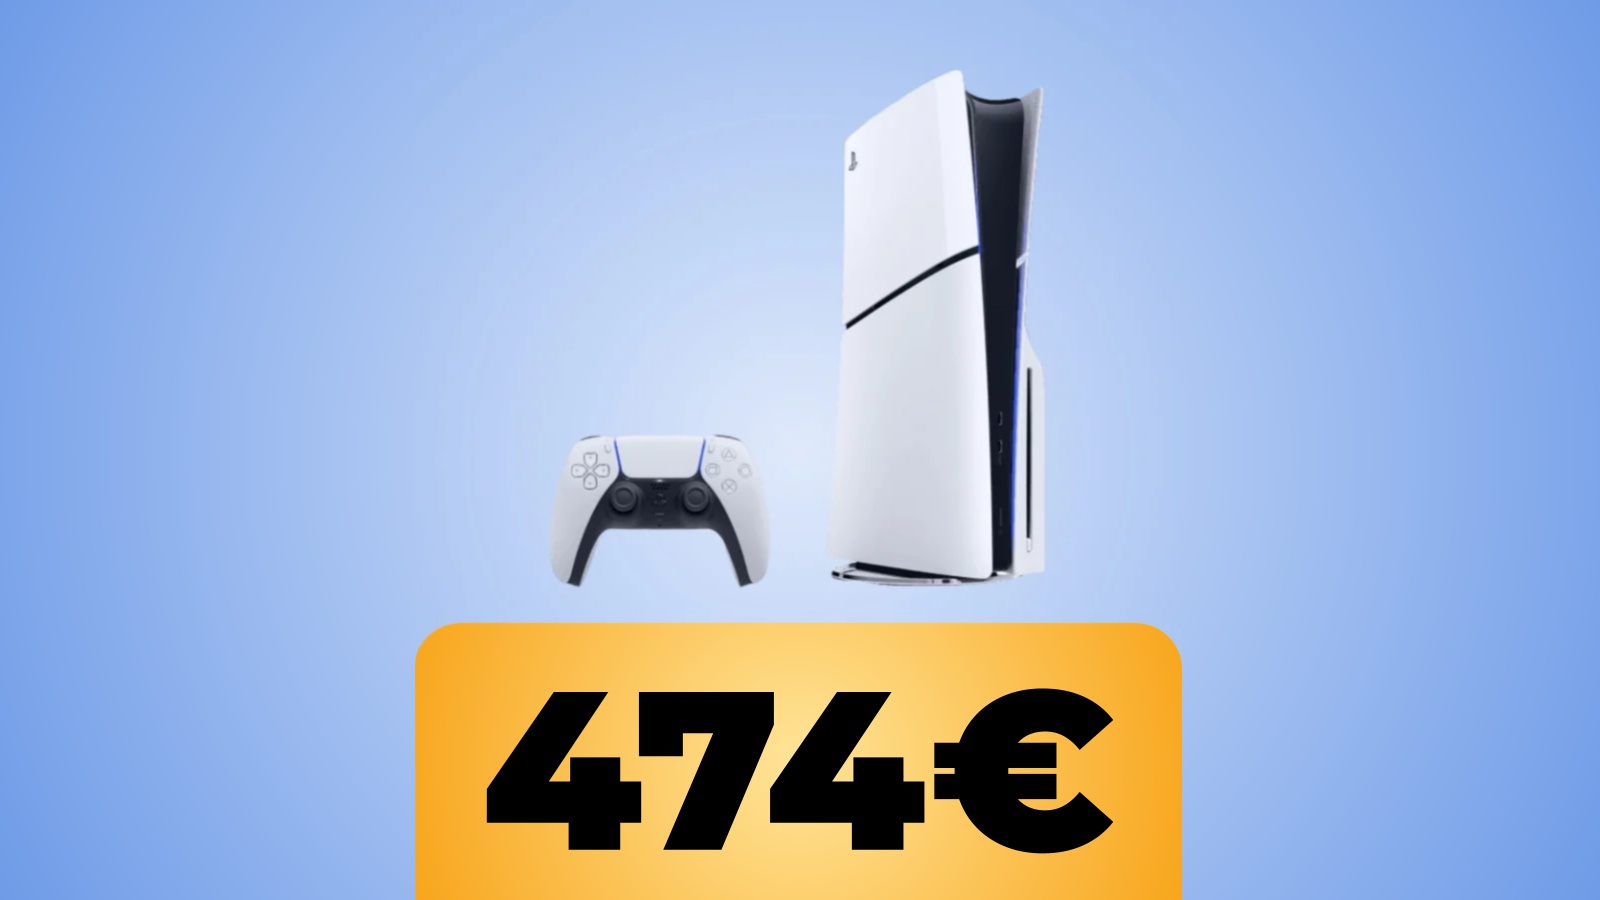 PlayStation 5 Slim modello standard ancora in offerta su Amazon Italia